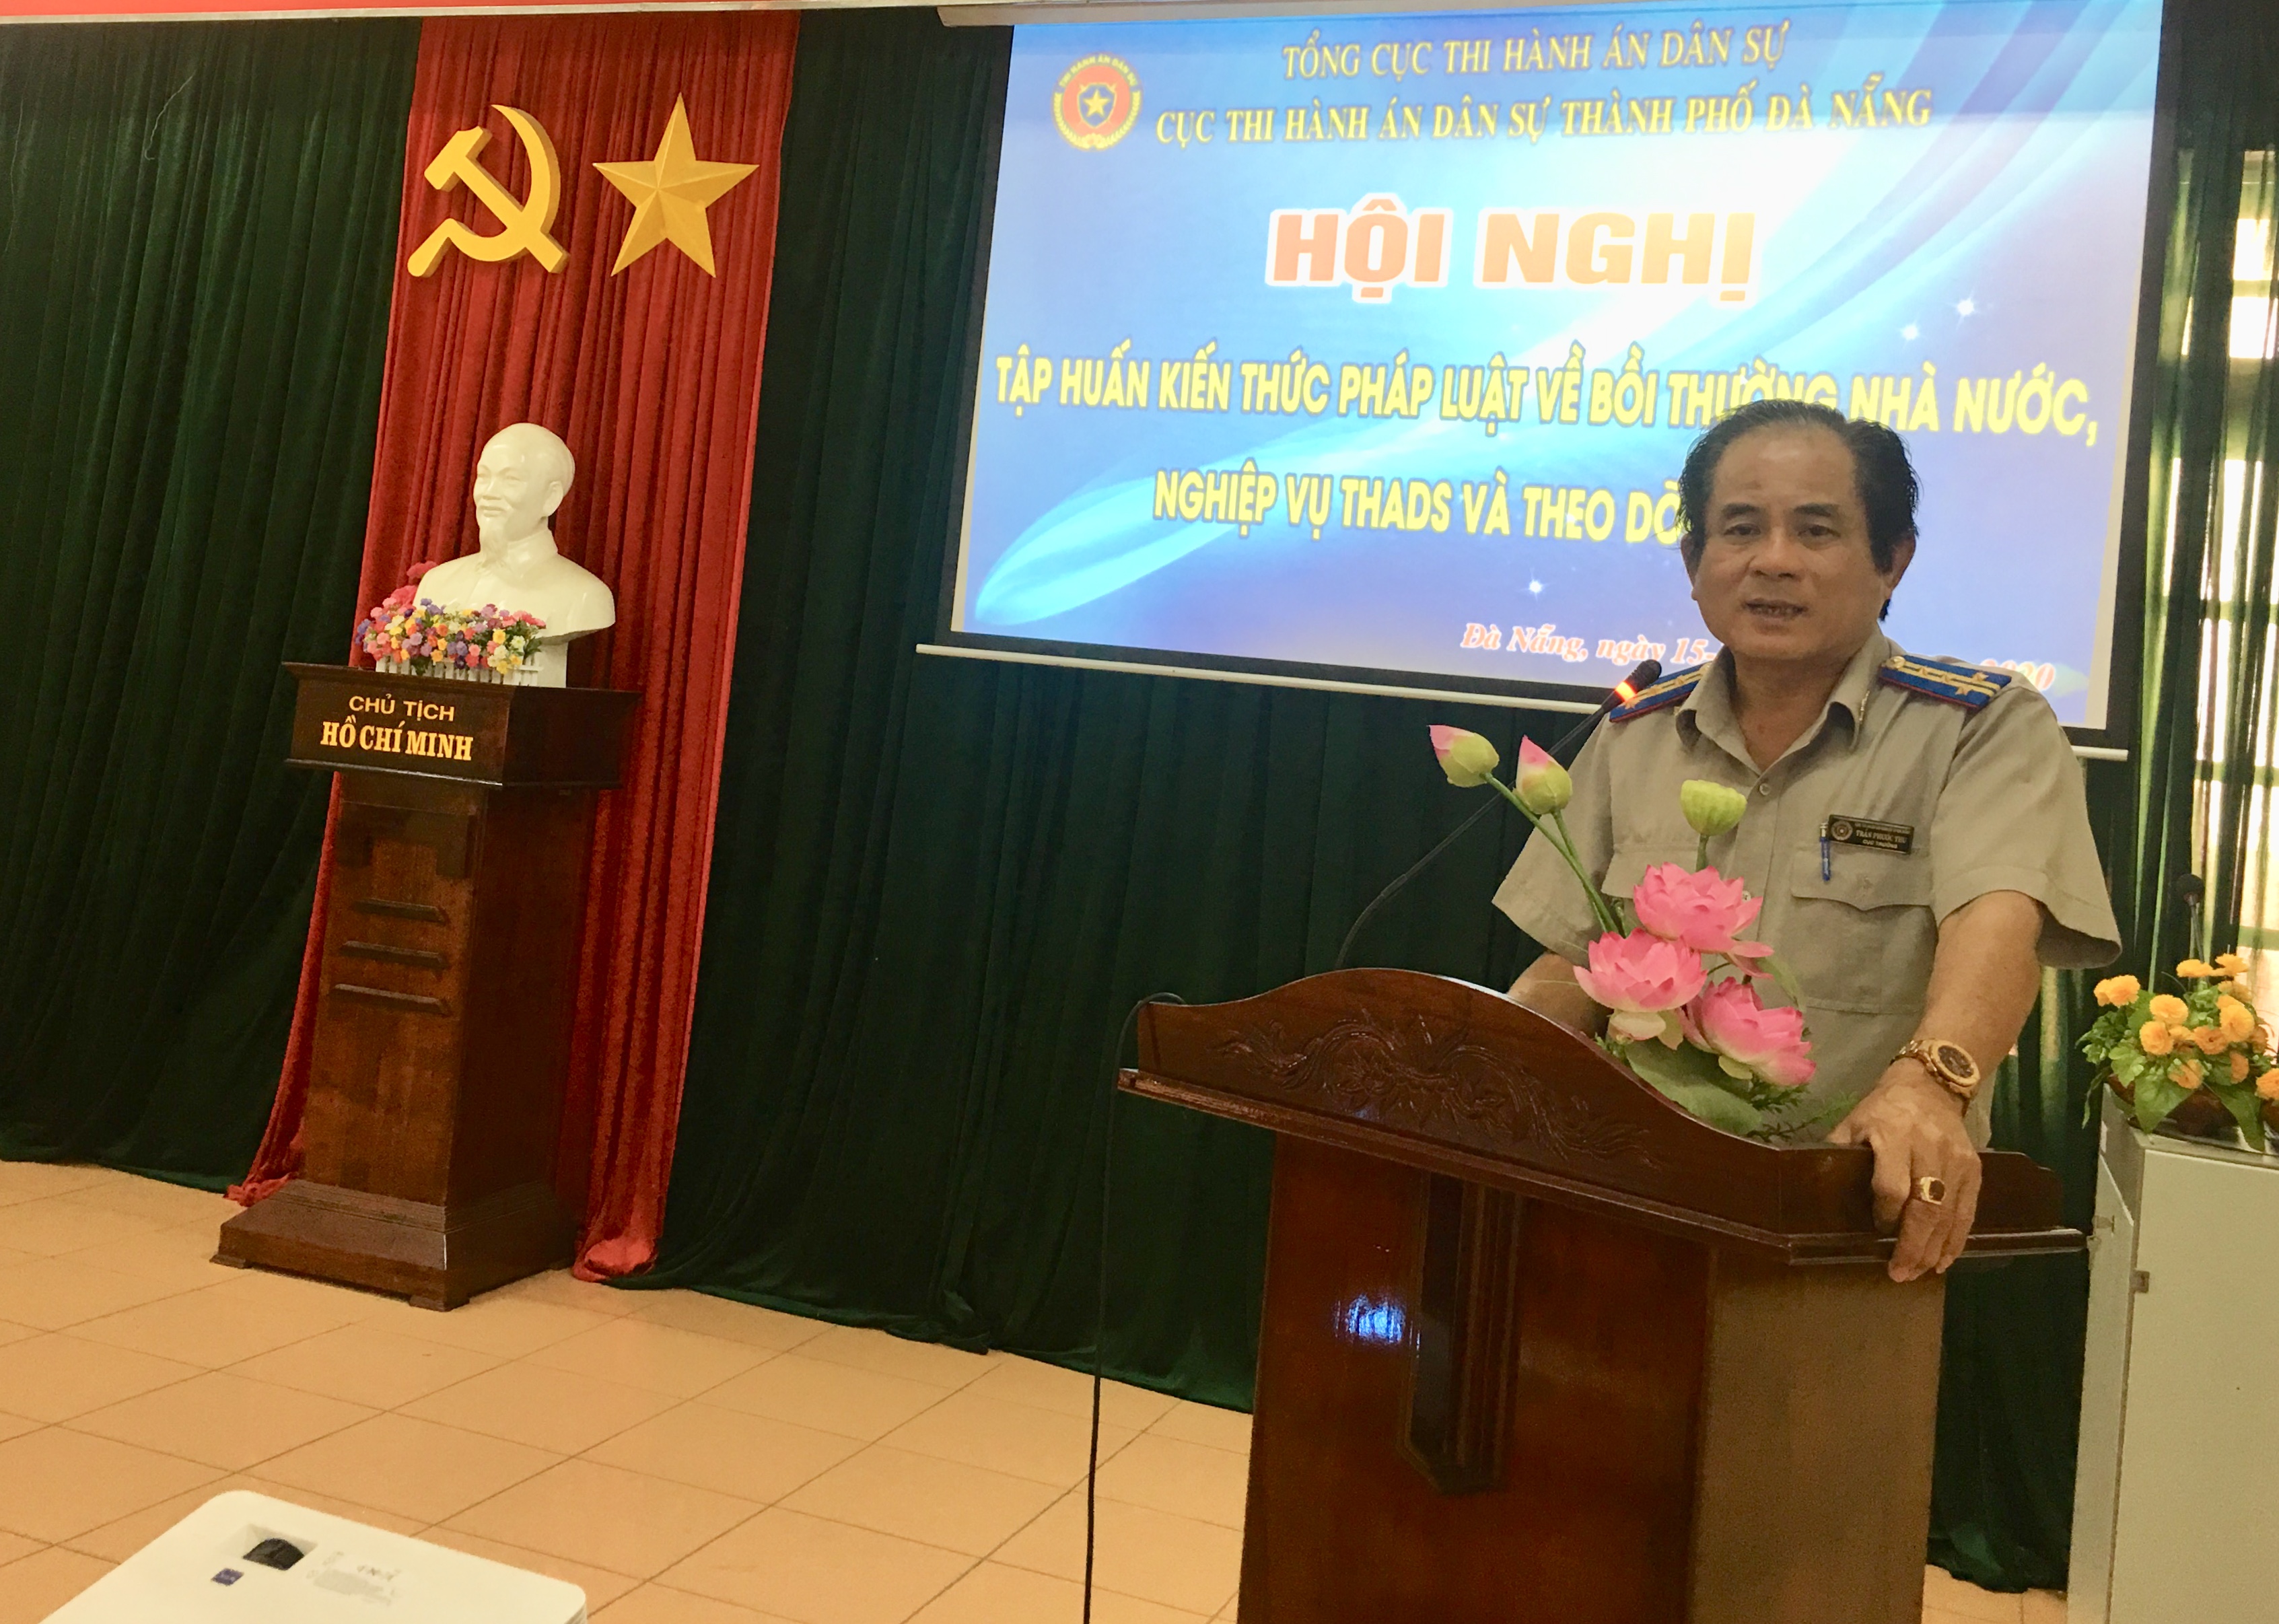 Đà Nẵng tổ chức Hội nghị tập huấn kiến thức pháp luật về bồi thường Nhà nước và nghiệp vụ THADS, theo dõi THAHC